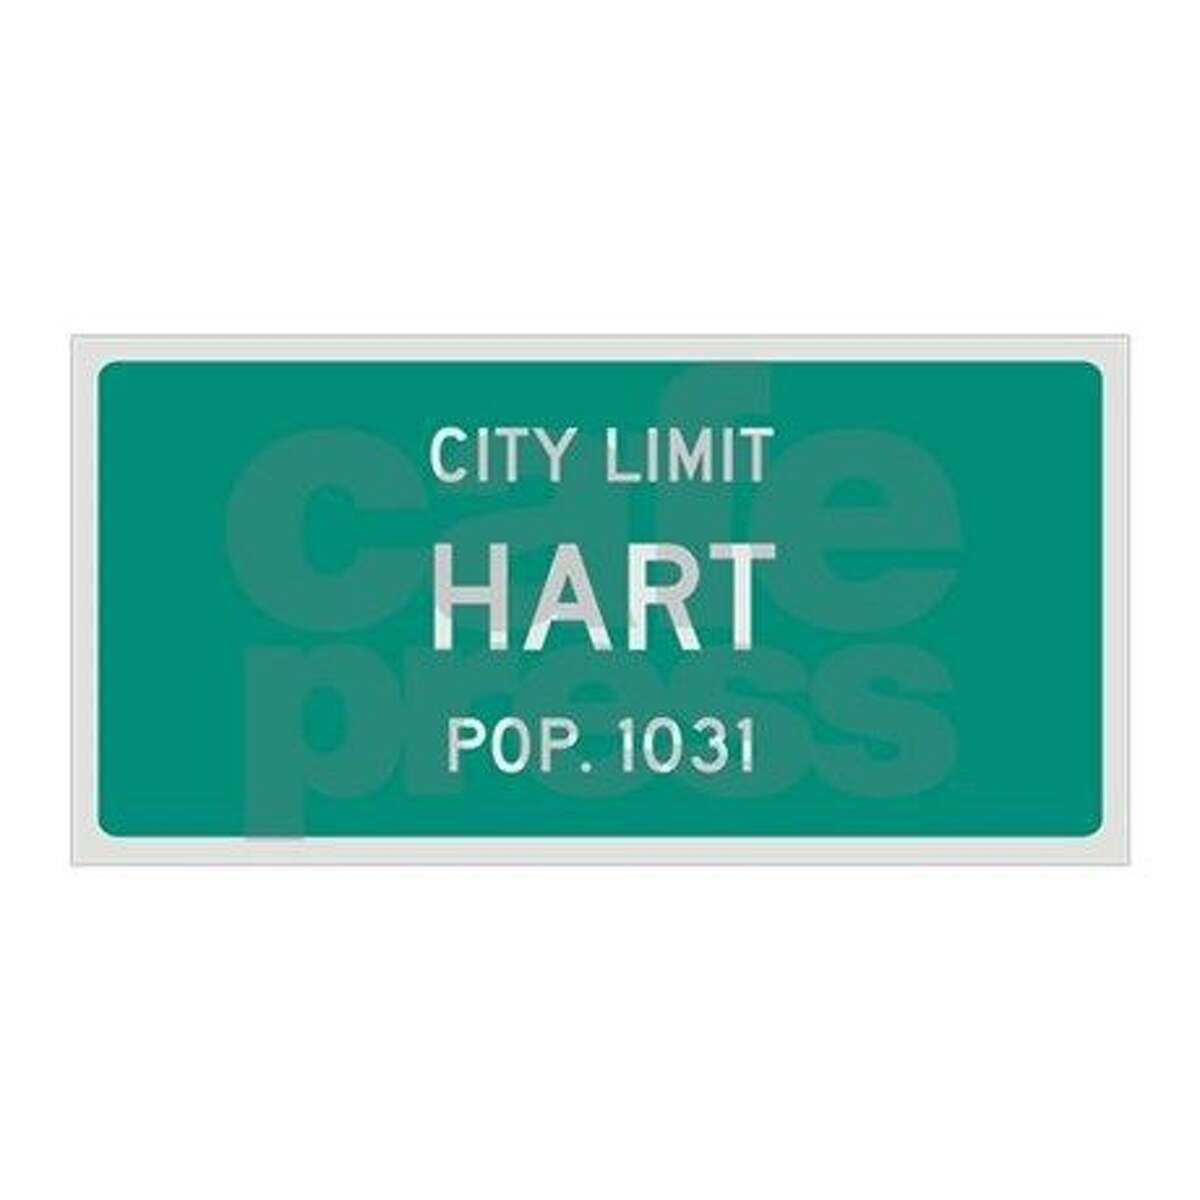 Hart city limits sign